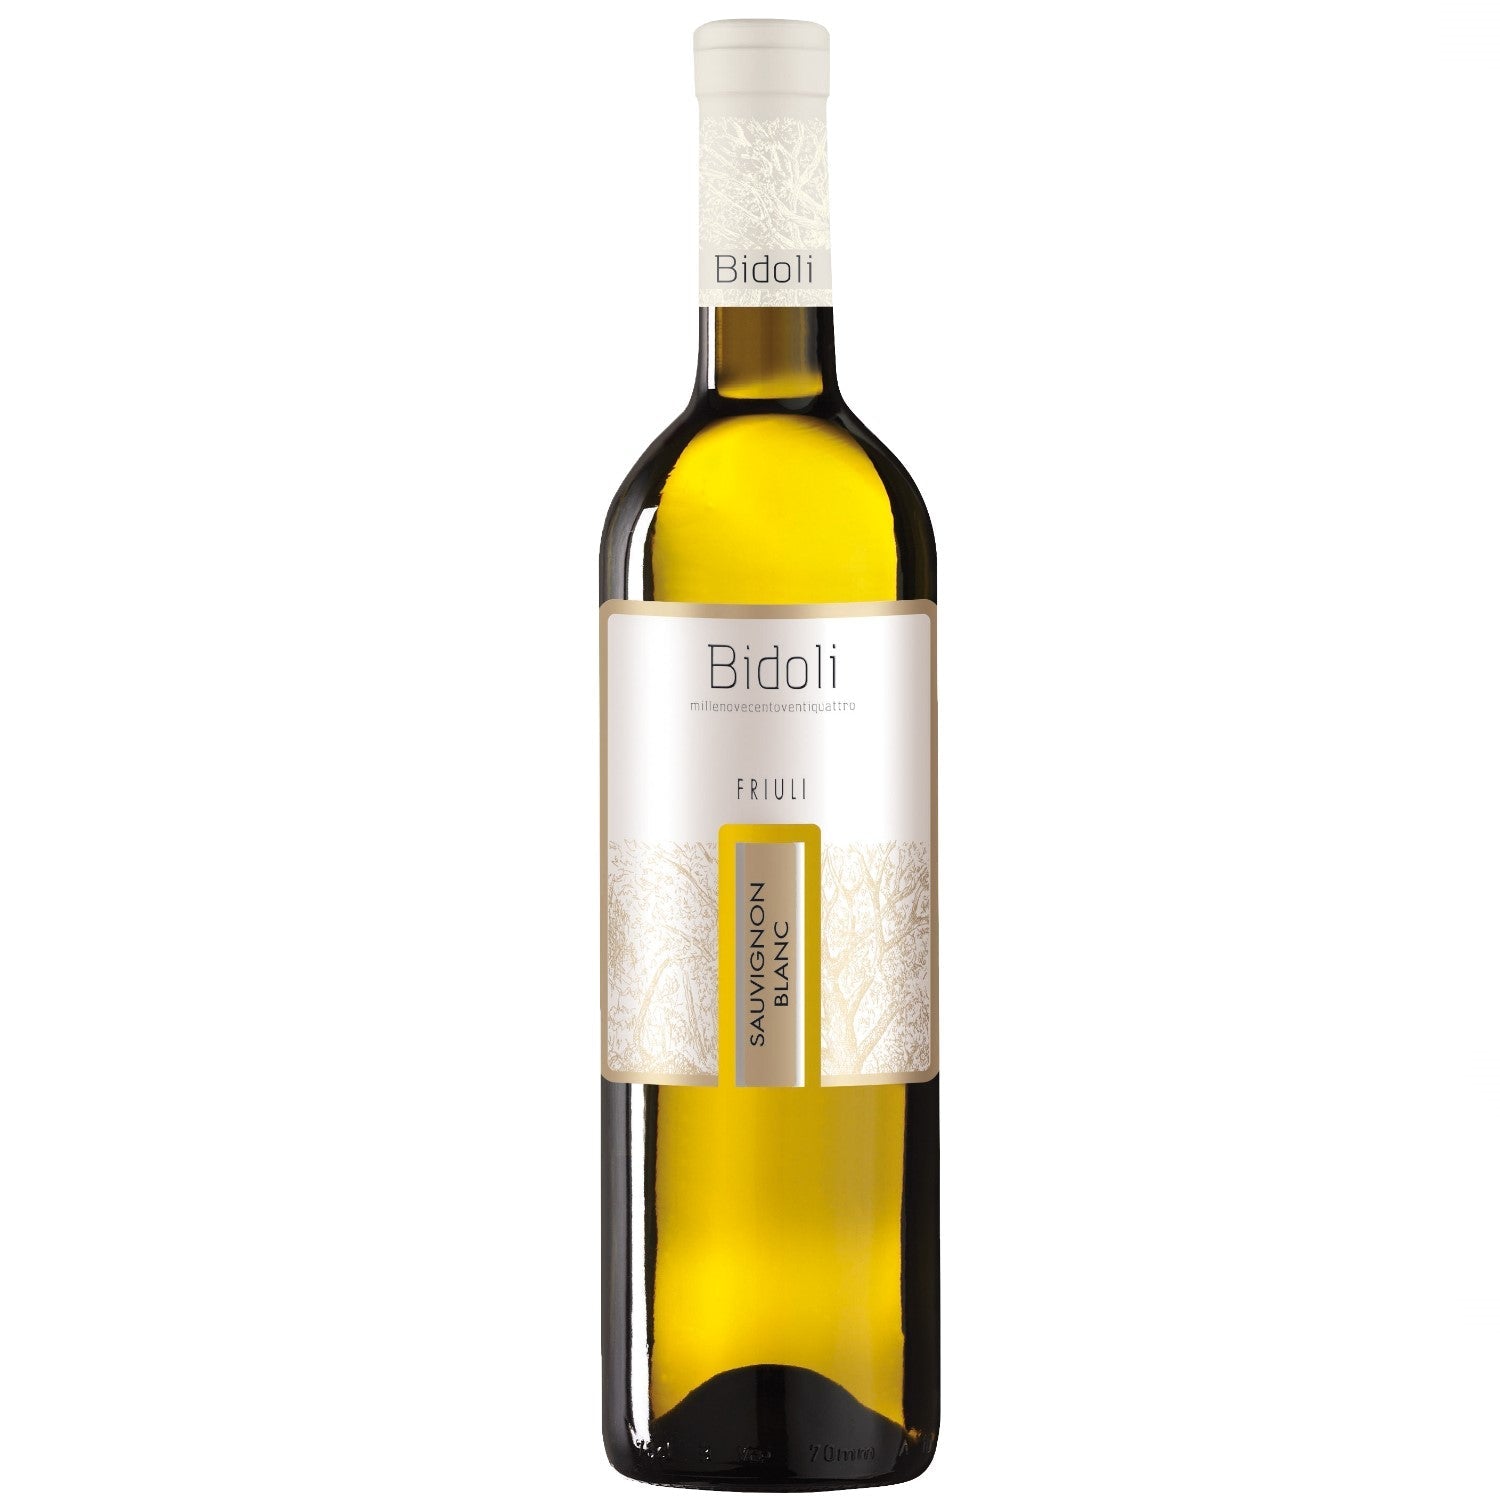 Bidoli Vini Sauvignon Blanc DOC Friuli Grave Weißwein Wein trocken Italien (6 x 0.75l) - Versanel -